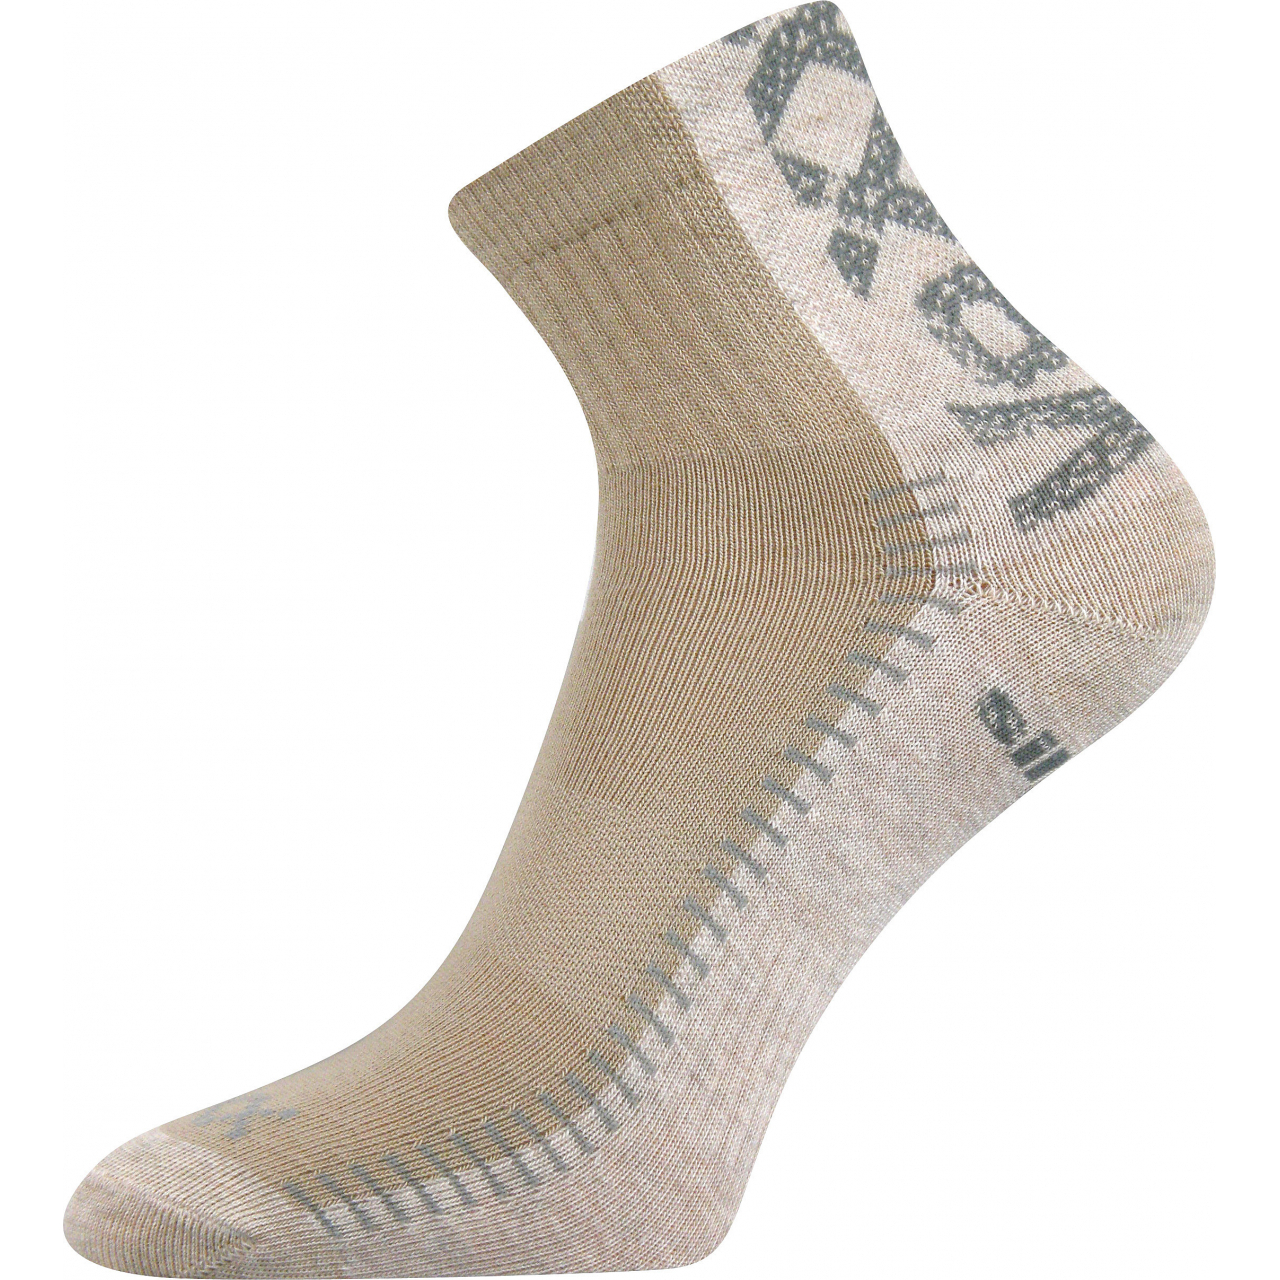 Ponožky sportovní Voxx Revolt - béžové-pískové, 47-50